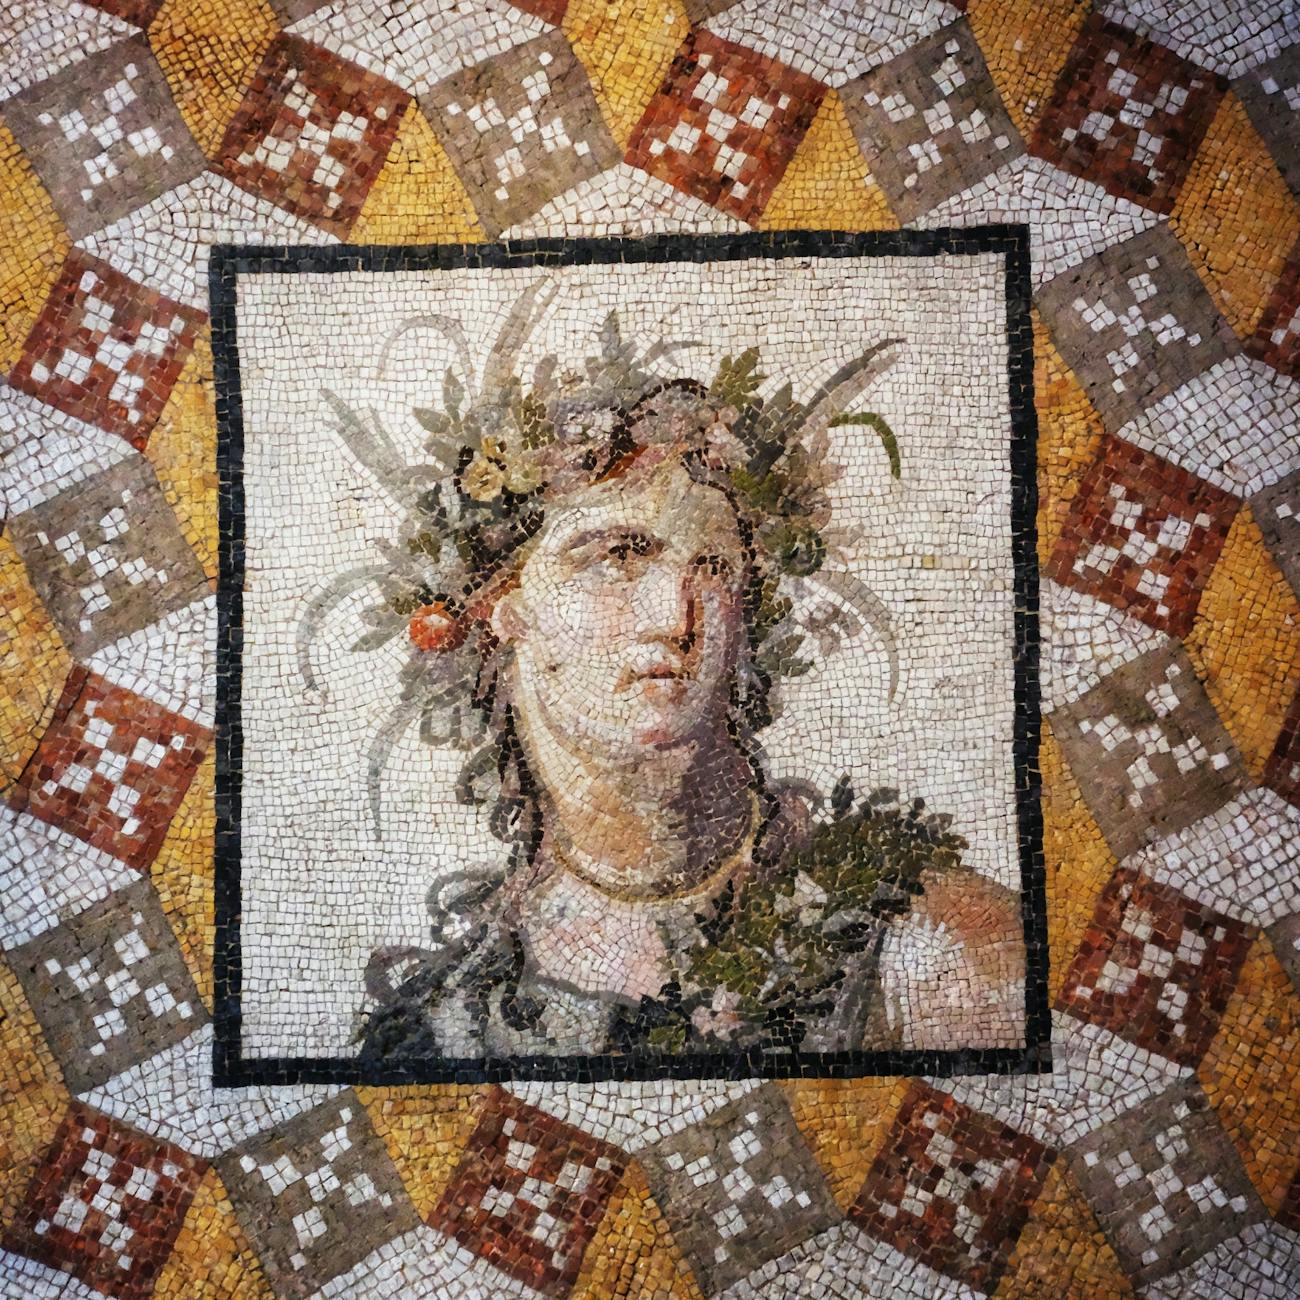 antioch mosaic from roman villa